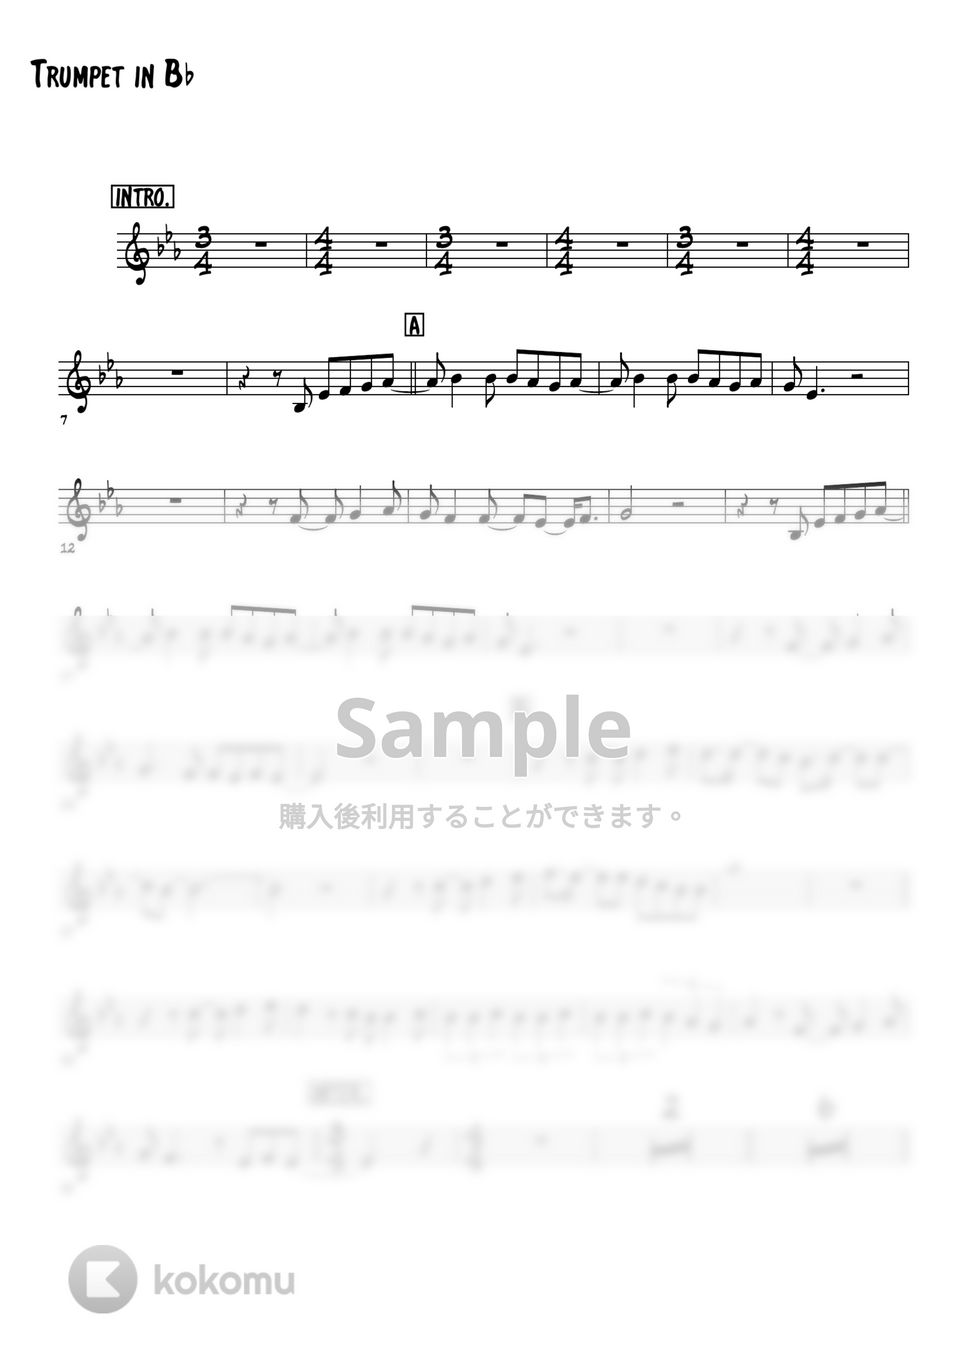 藤井フミヤ - TRUE LOVE (トランペットメロディー楽譜) by 高田将利